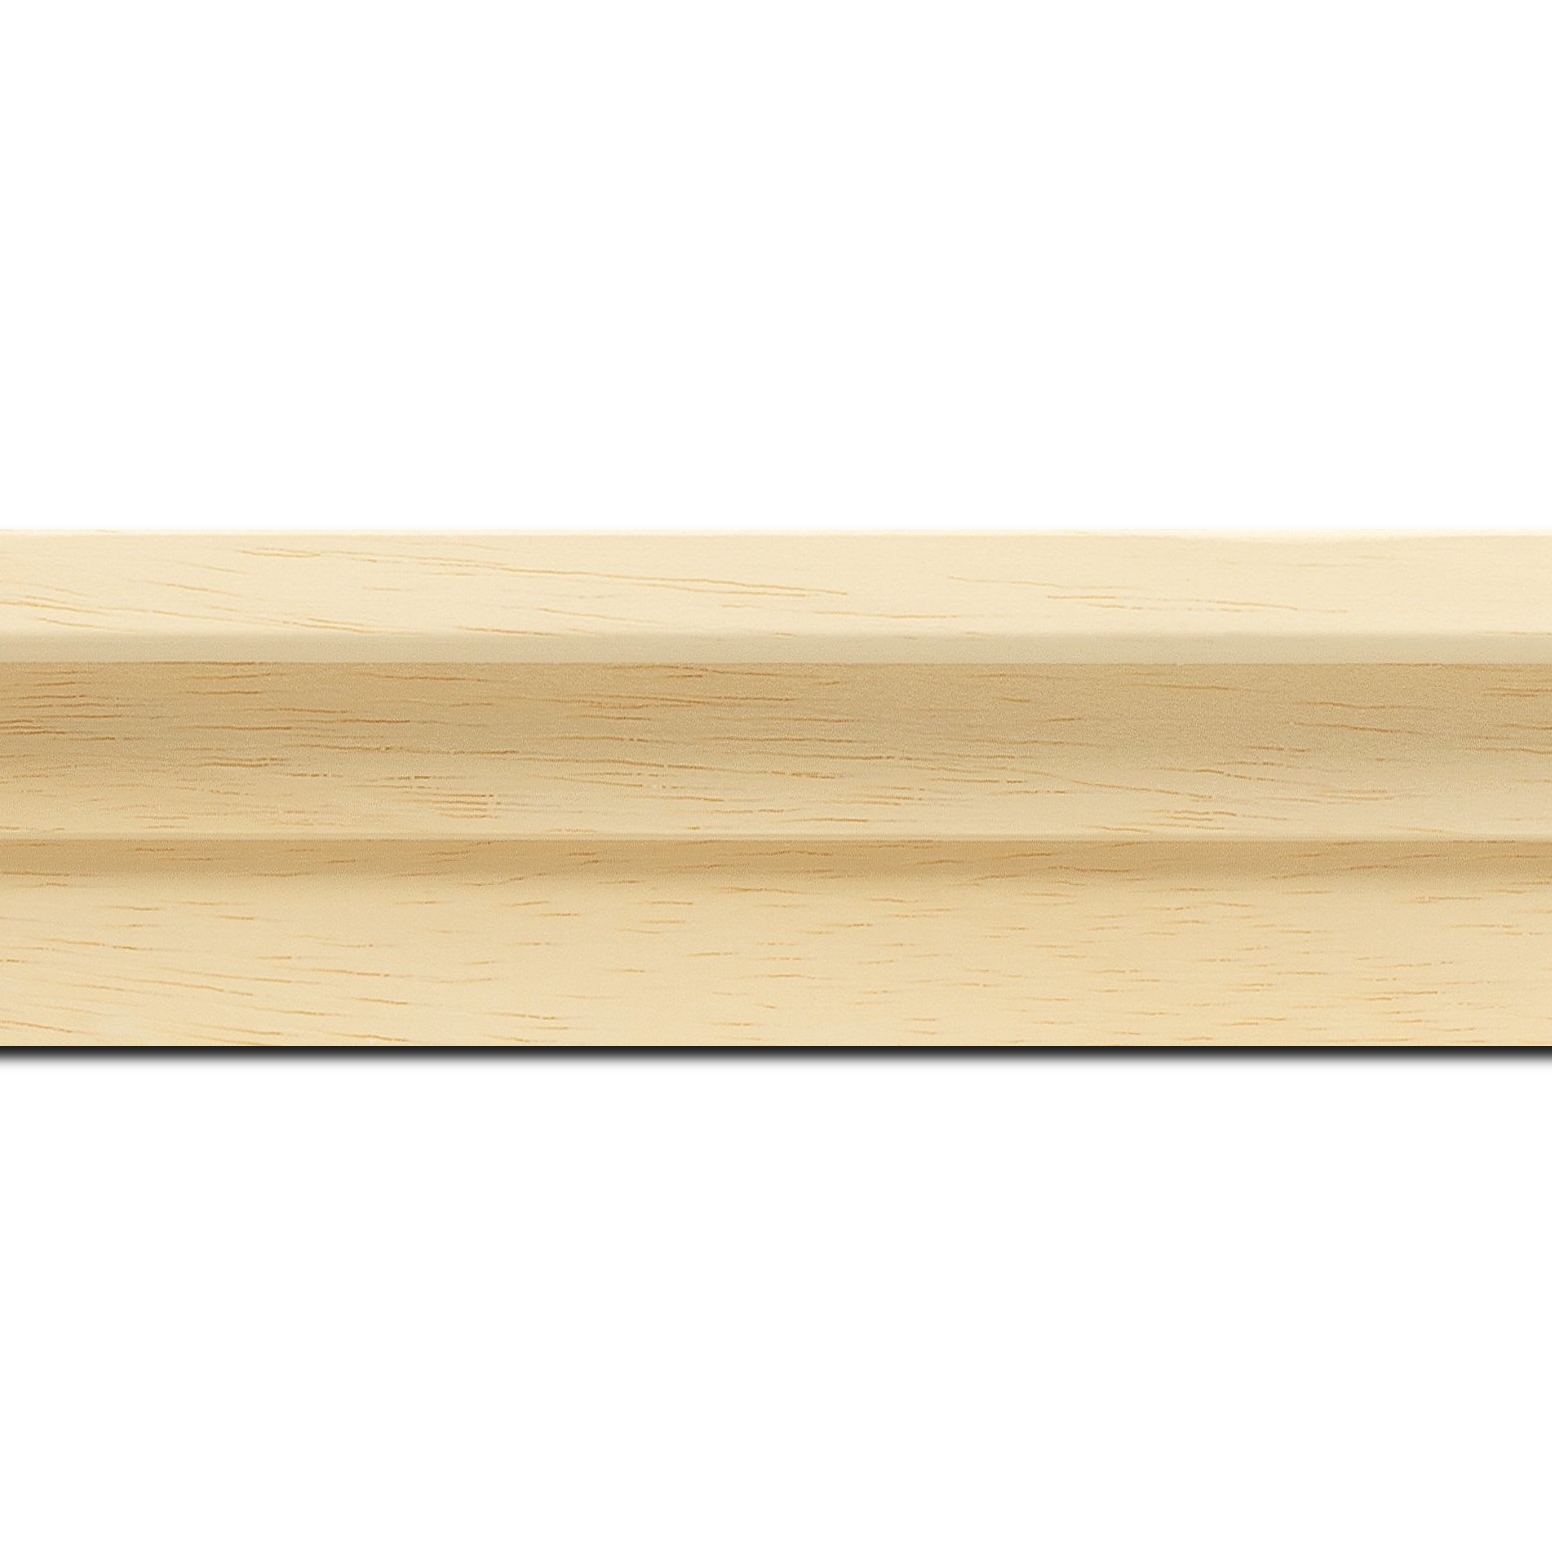 Pack par 12m, bois caisse américaine profil escalier largeur 4.4cm naturel (spécialement conçu pour les châssis d'une épaisseur jusqu’à 2.5cm ) sans vernis,peut être peint...(longueur baguette pouvant varier entre 2.40m et 3m selon arrivage des bois)